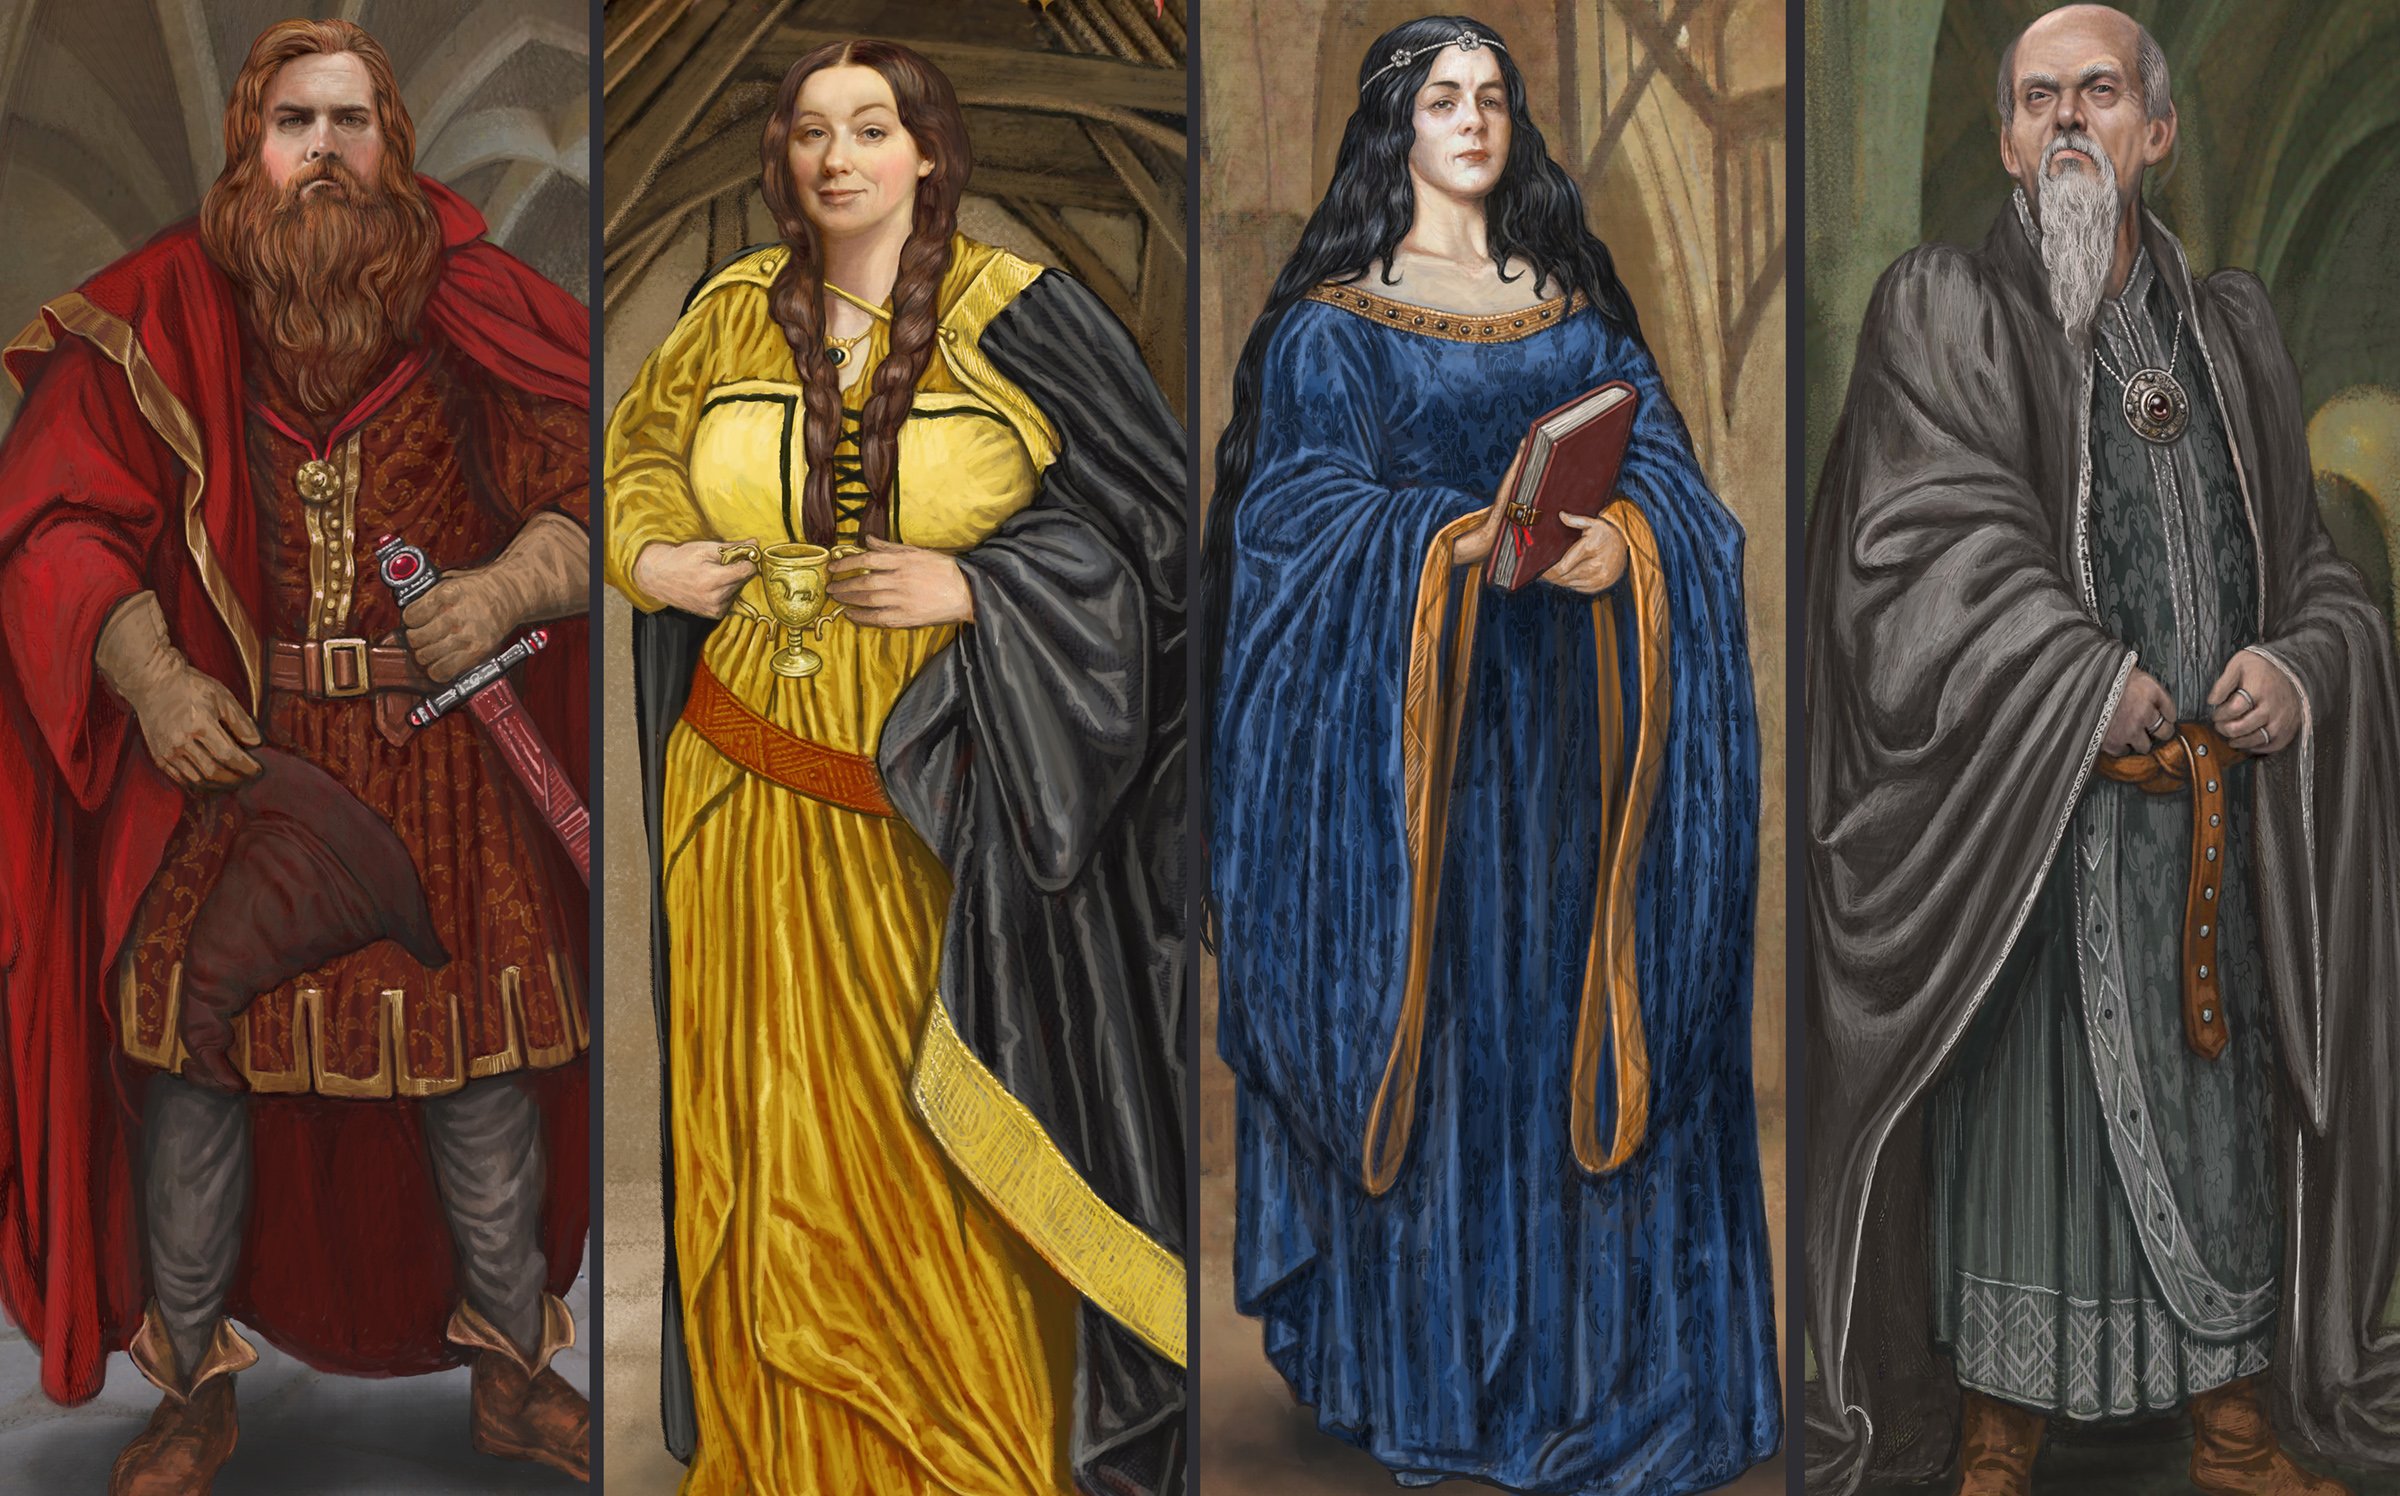 Em ordem, os fundadores de Hogwarts: Godrico Gryffindor, Helga Hufflepuff, Rowena Ravenclaw e Salazar Slytherin. (Fonte: Harry Potter Wiki / Reprodução)